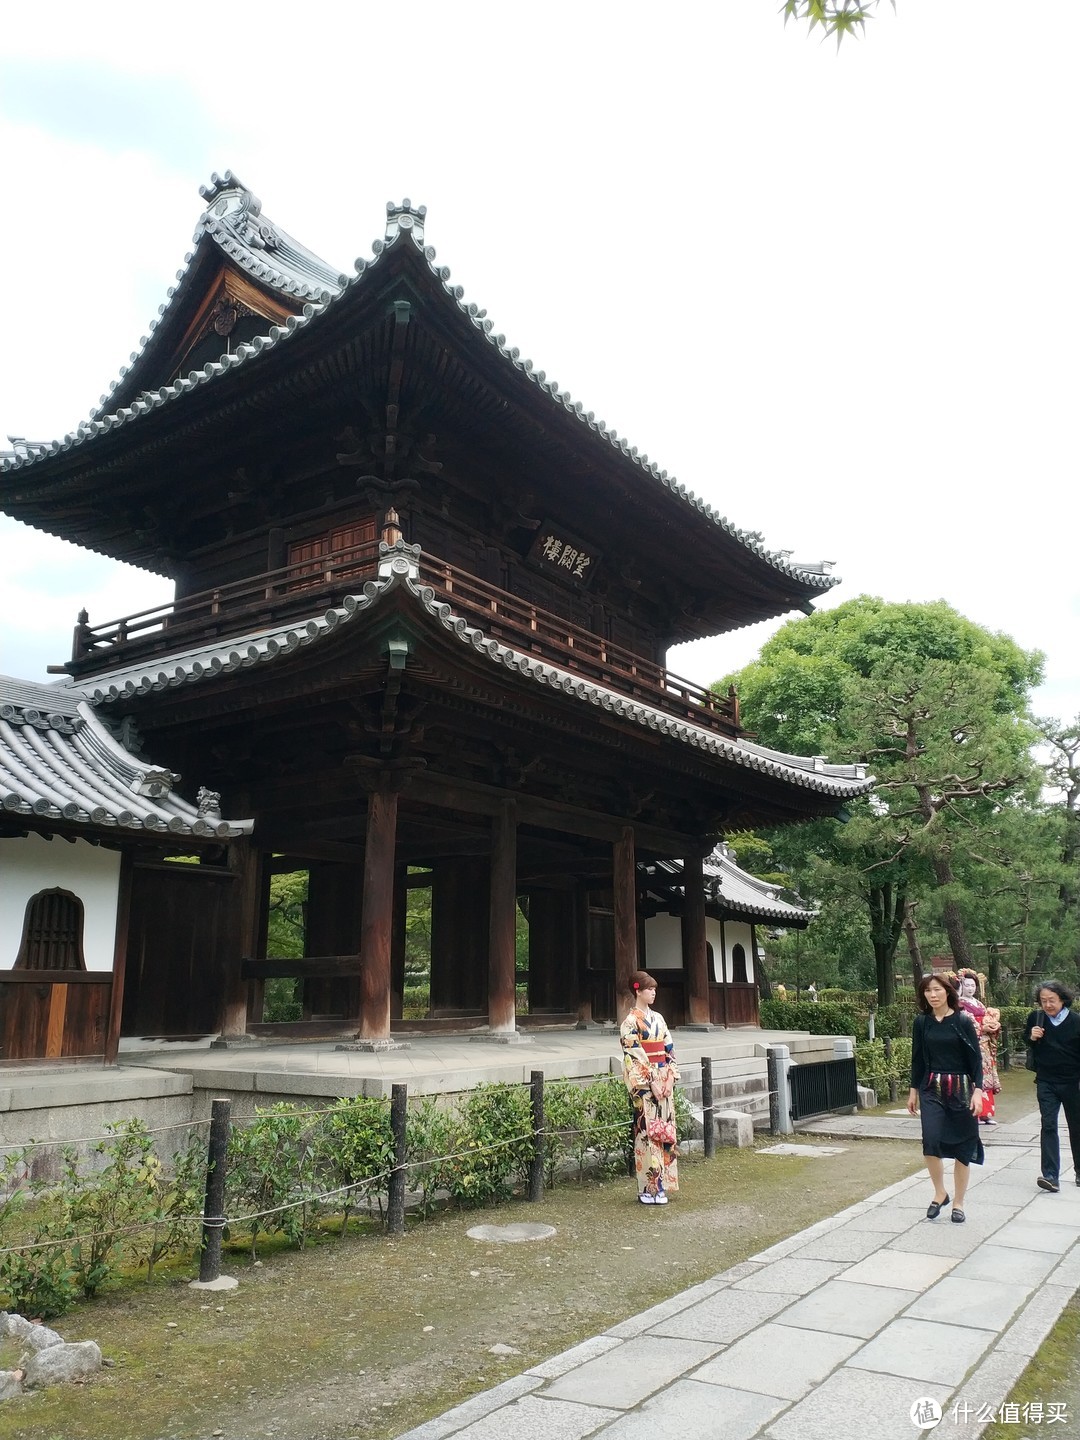 准备去觅食了，京都的第一餐中饭是打算去吃叙叙苑的和牛烤肉的，在四条新京极附近，路过建仁寺，进去随意逛逛，看到了在拍照的和服女孩和艺伎。